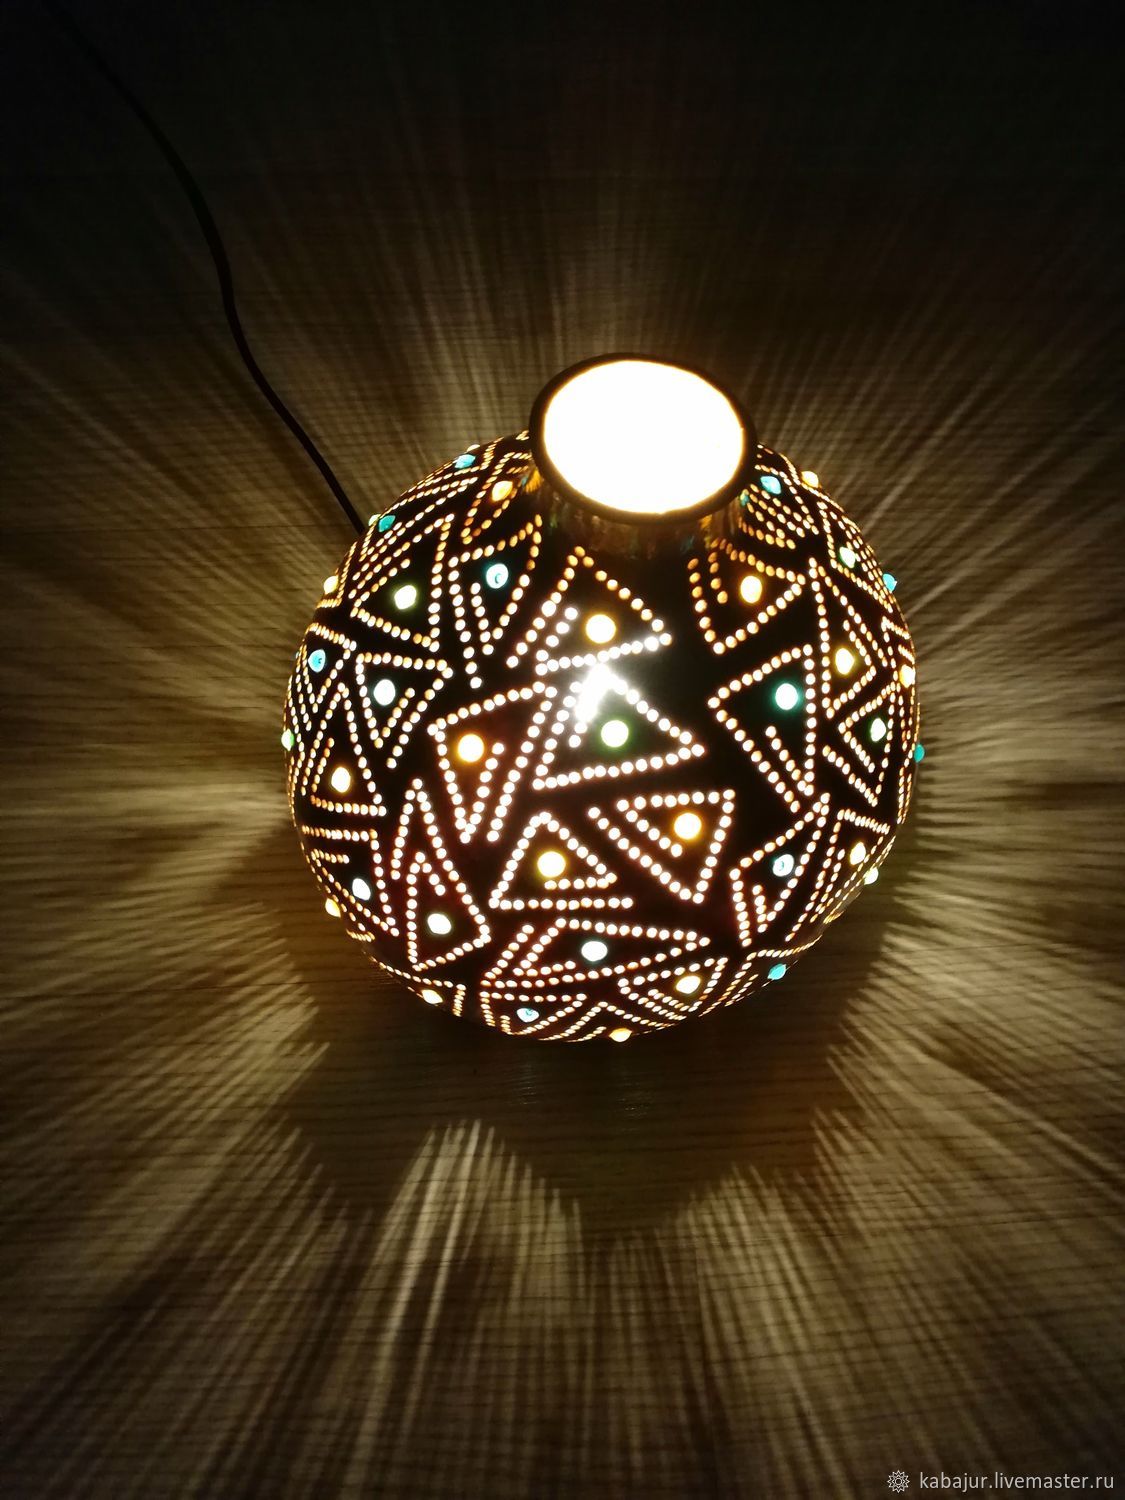  эко лампа с геометрическим узором, ночник этнический, Настольные лампы, Айдын,  Фото №1